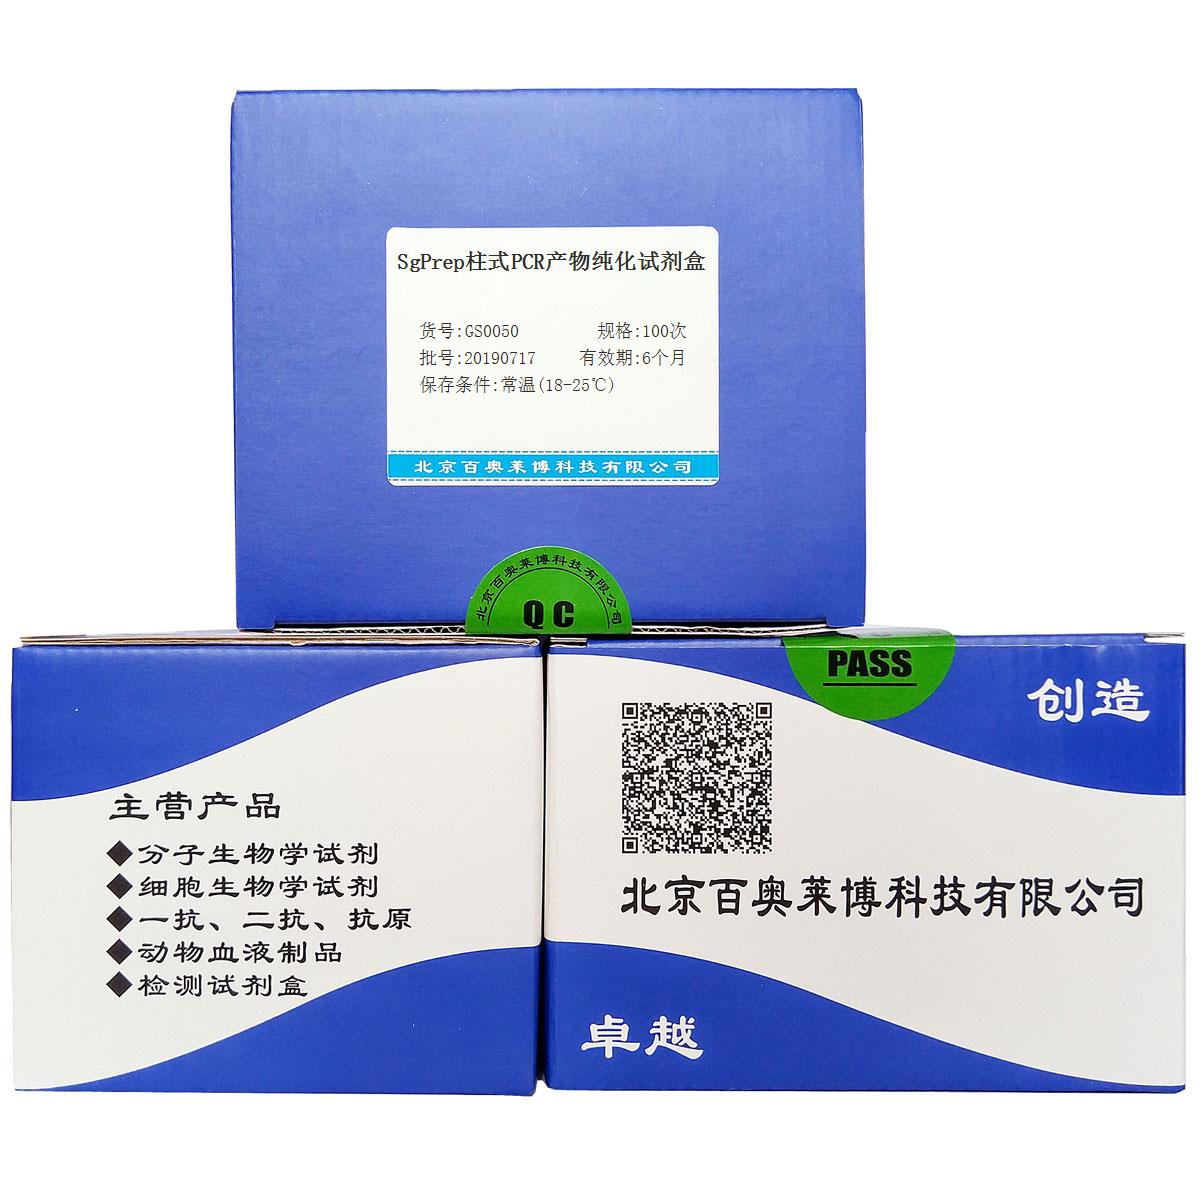 SgPrep柱式PCR产物纯化试剂盒优惠促销